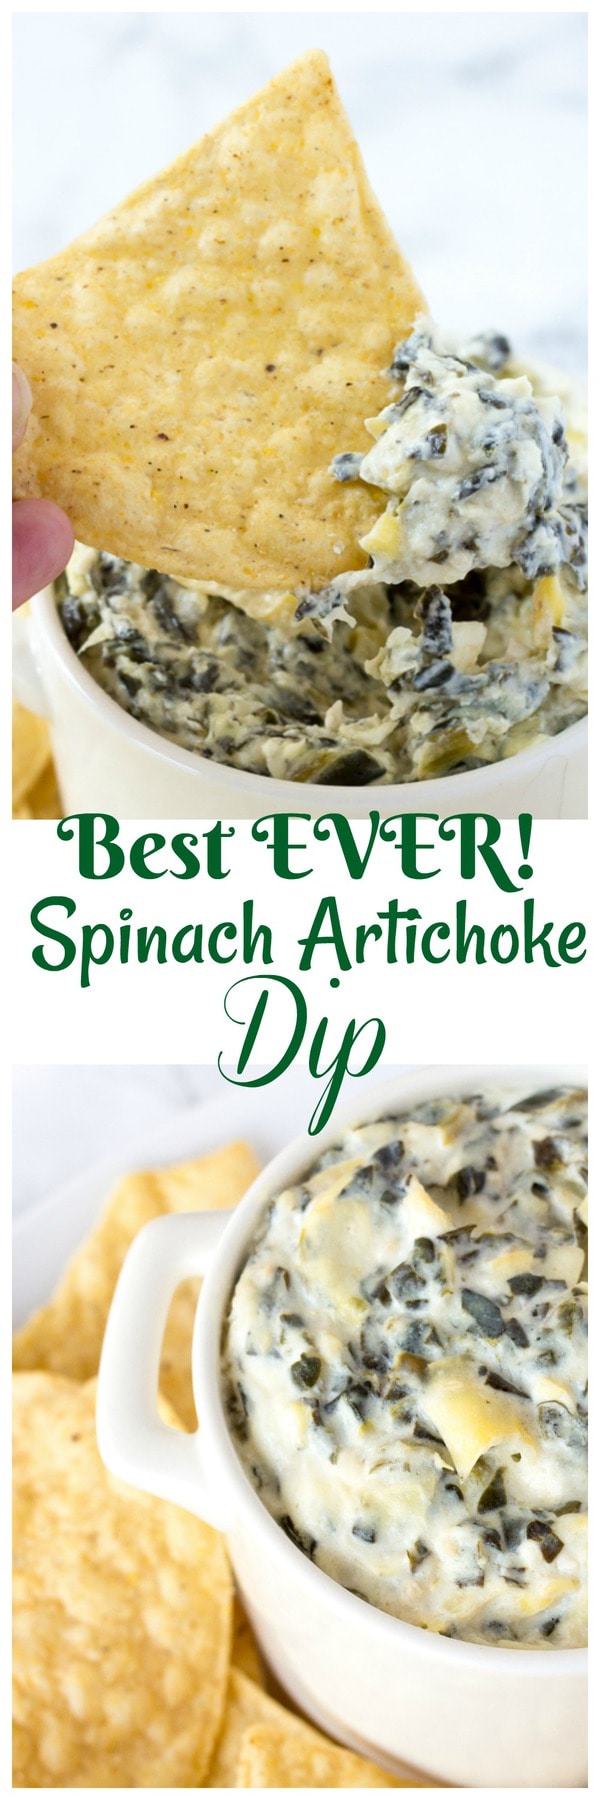 Spinach artichoke Dip Recipe